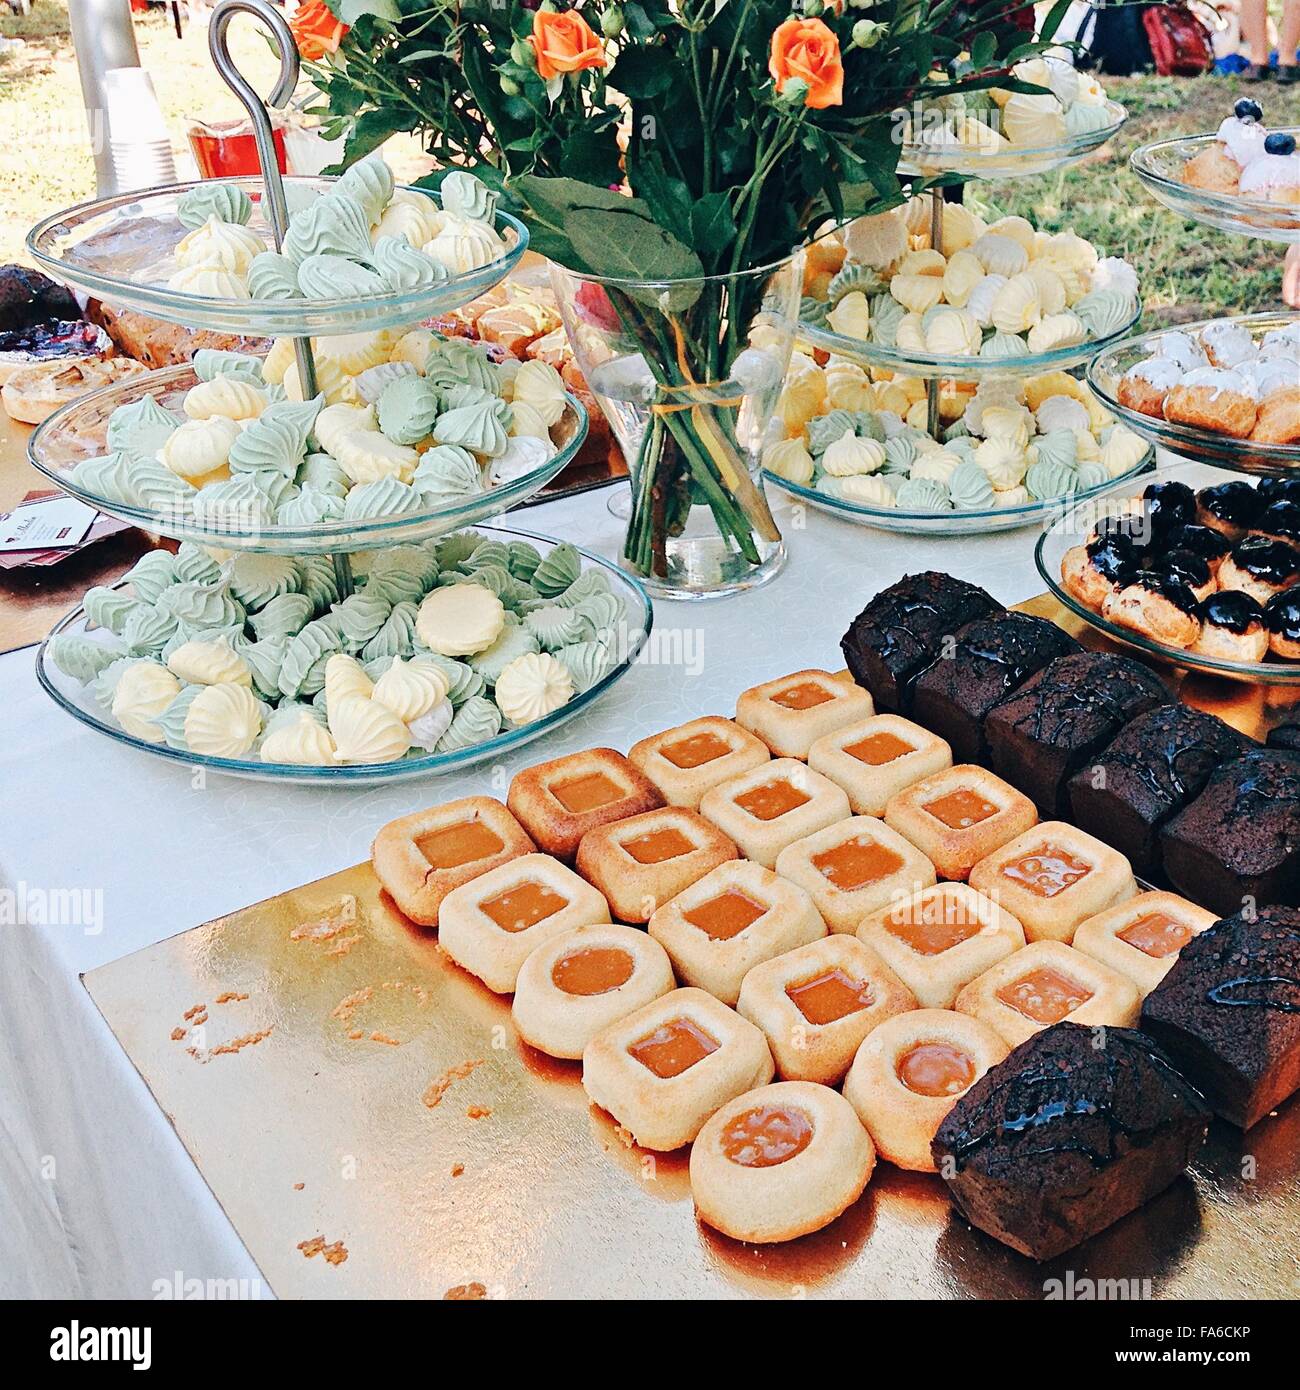 Sélection de gâteaux et desserts sur une table Banque D'Images